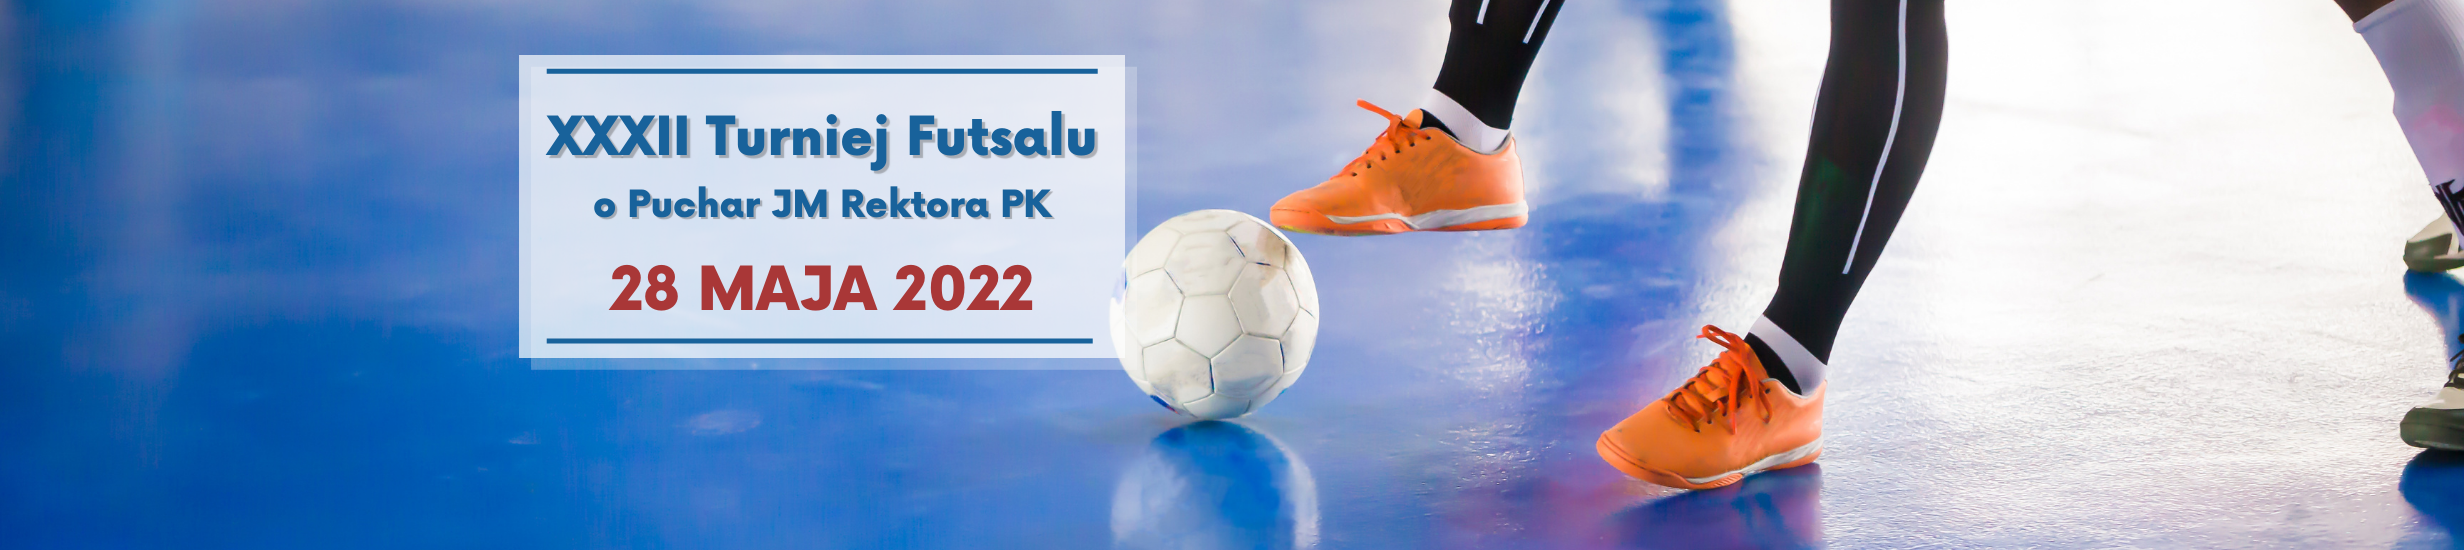 XXXII Turniej Futsalu o Puchar JM Rektora PK